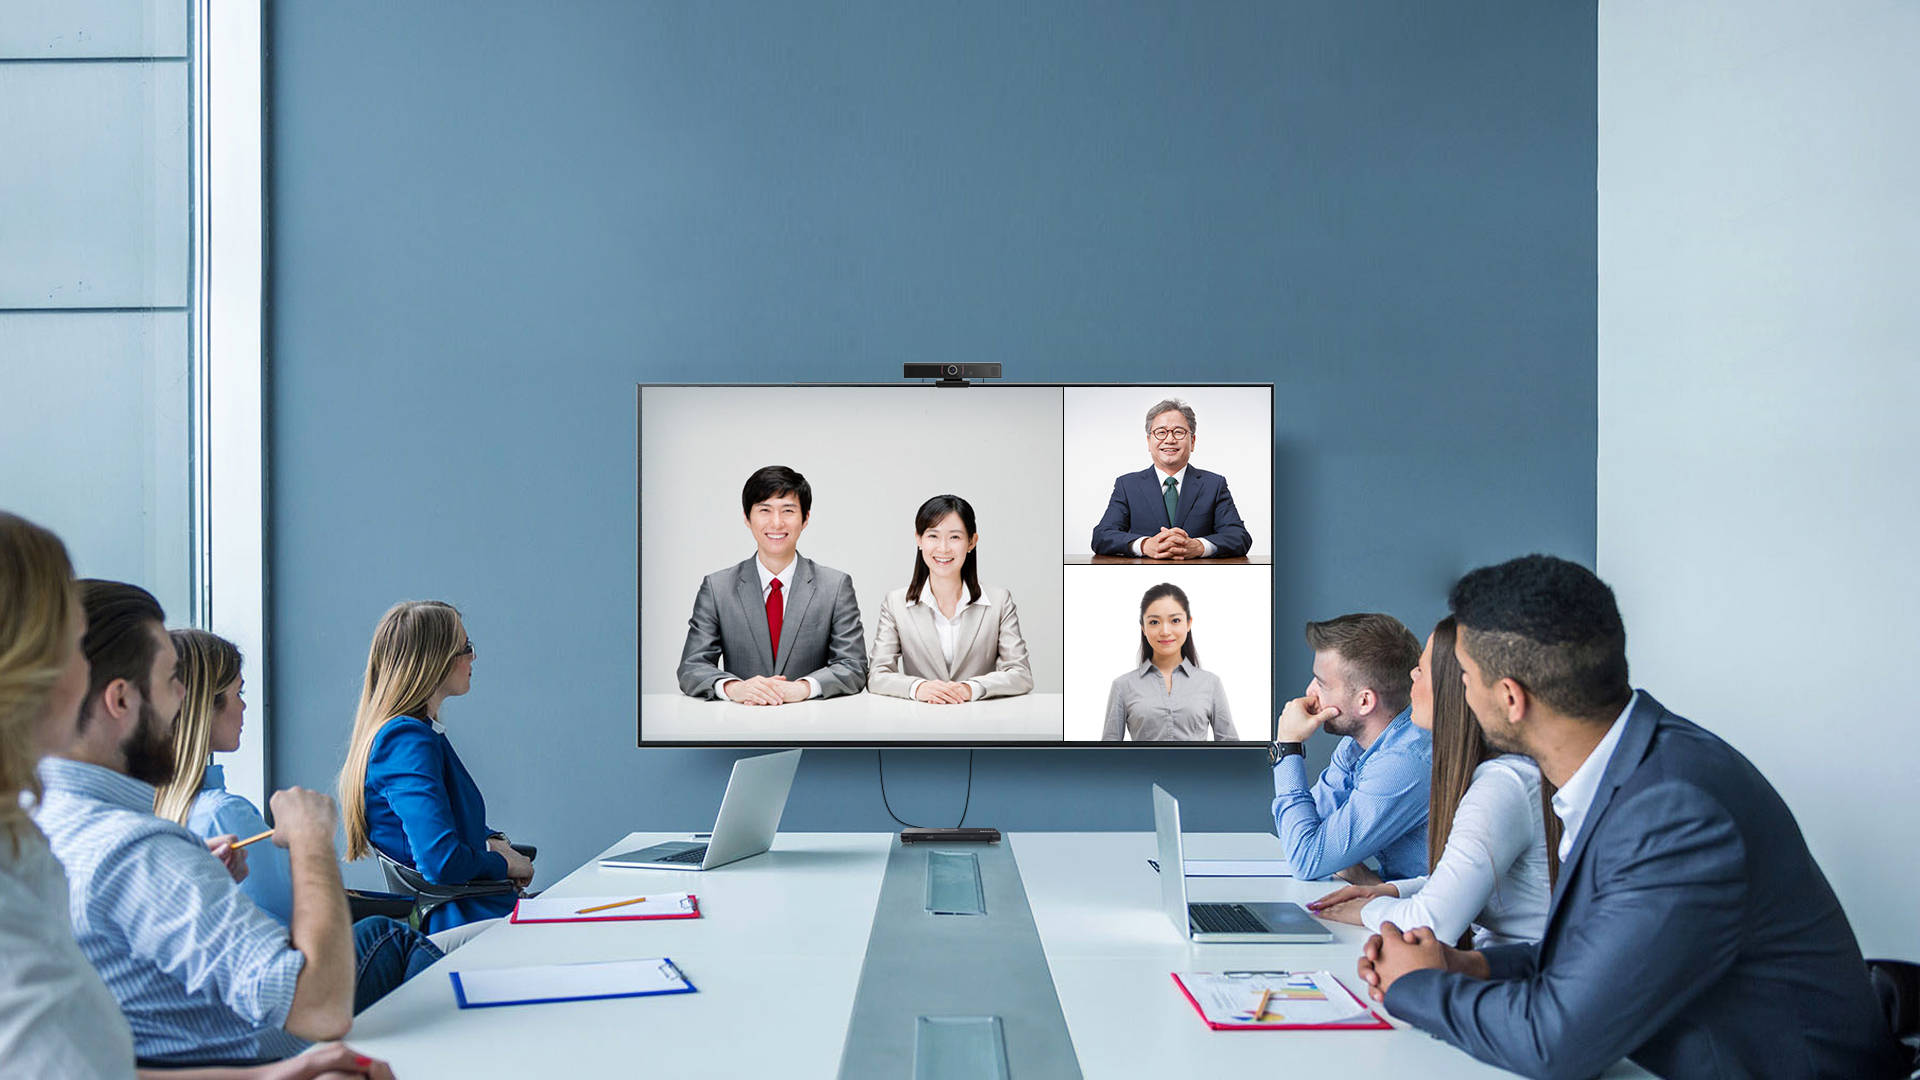 图片展示了一场视频会议，会议室内坐着几位专注的参与者，屏幕上显示着两位亚洲男女和一位老年男性。